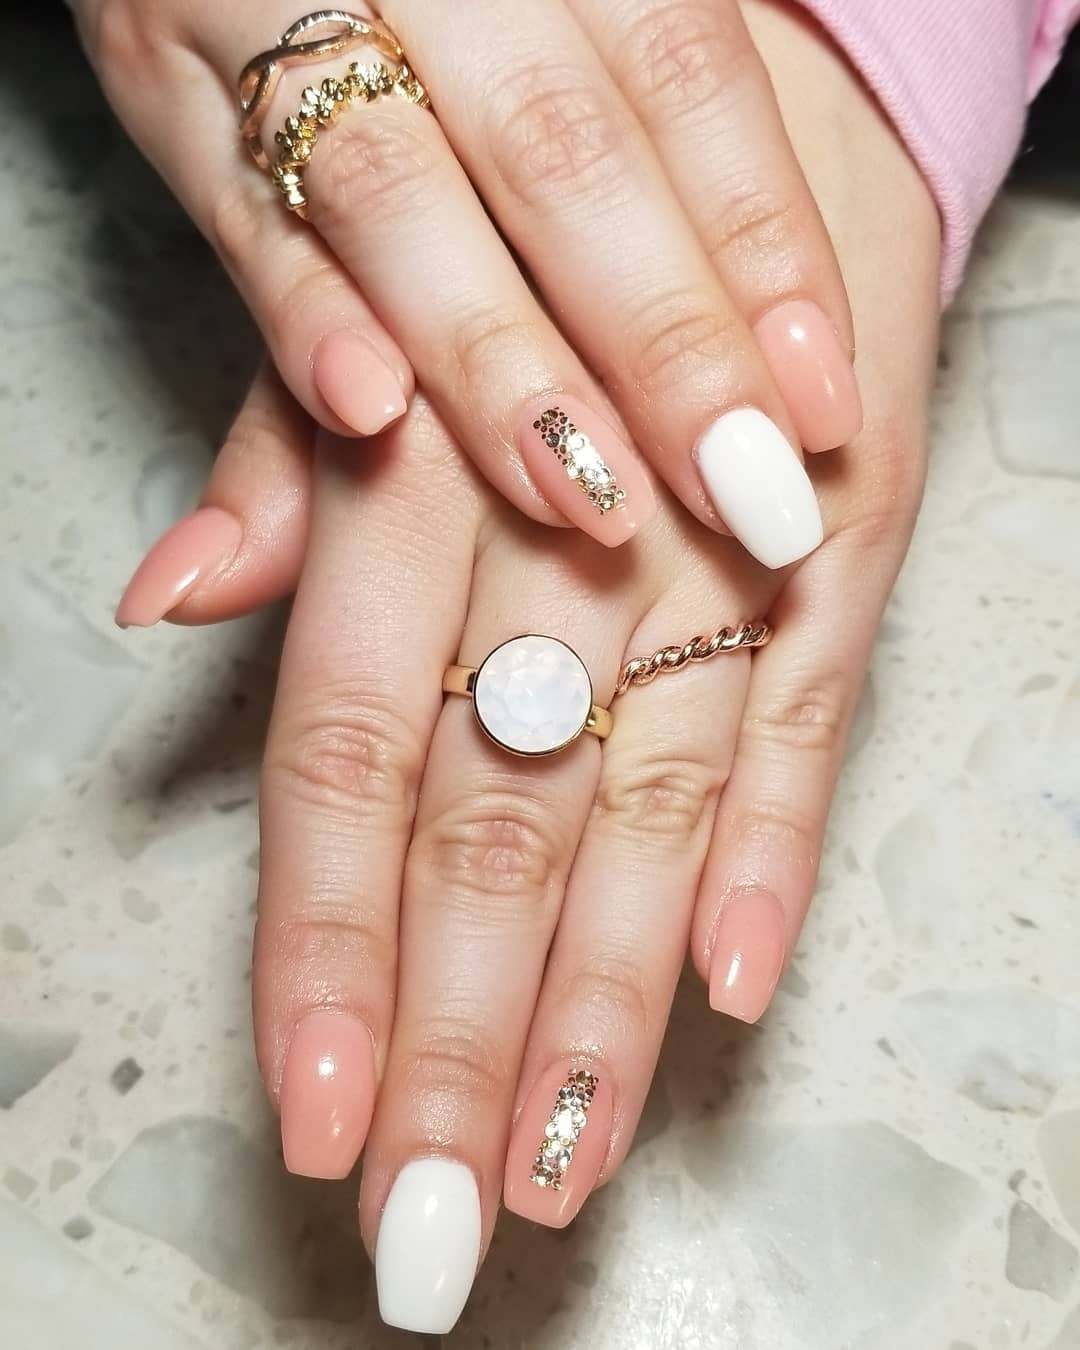 Aprikosfärg och vita naglar med guldspik